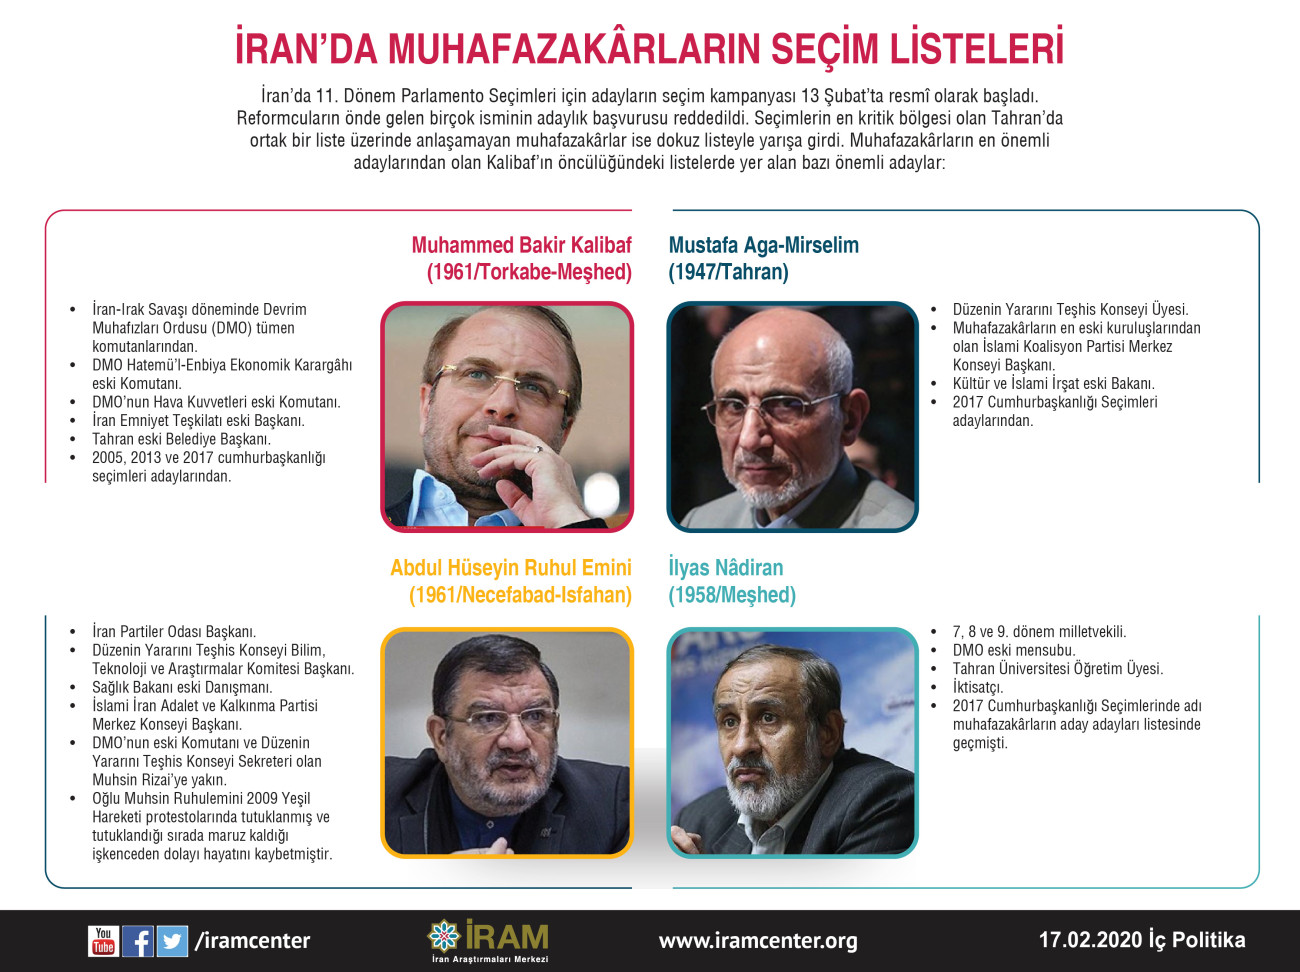 İran’da Muhafazakârların Seçim Listeleri